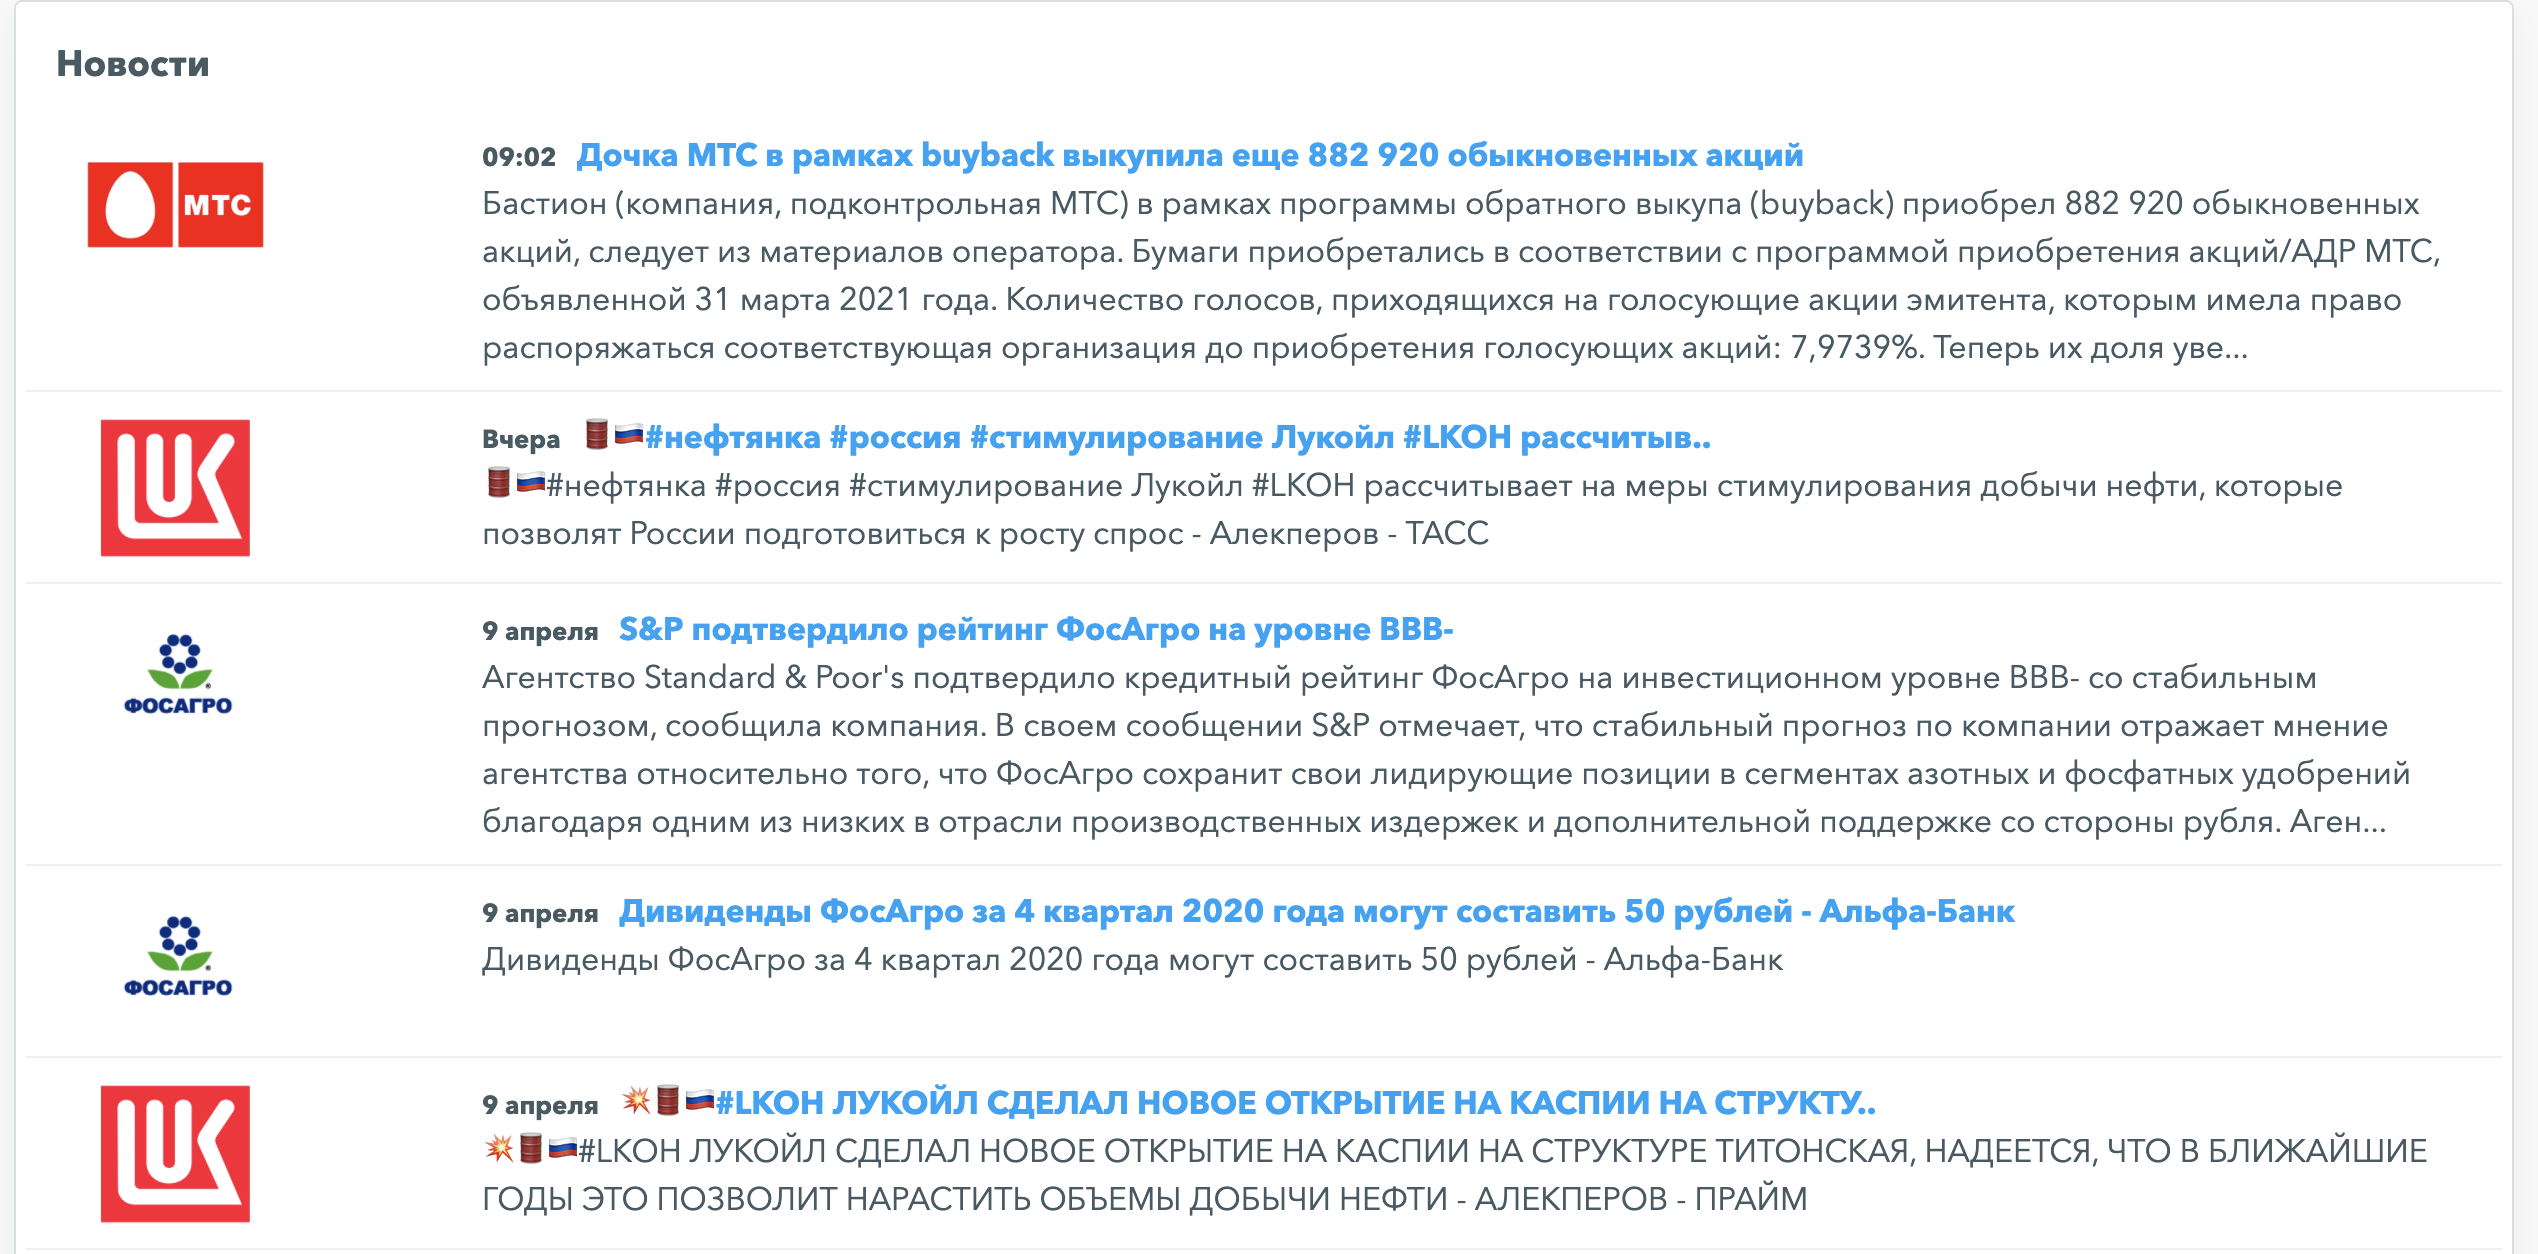 Новостная лента по бумагам инвестиционного портфеля на FinanceMarker.ru